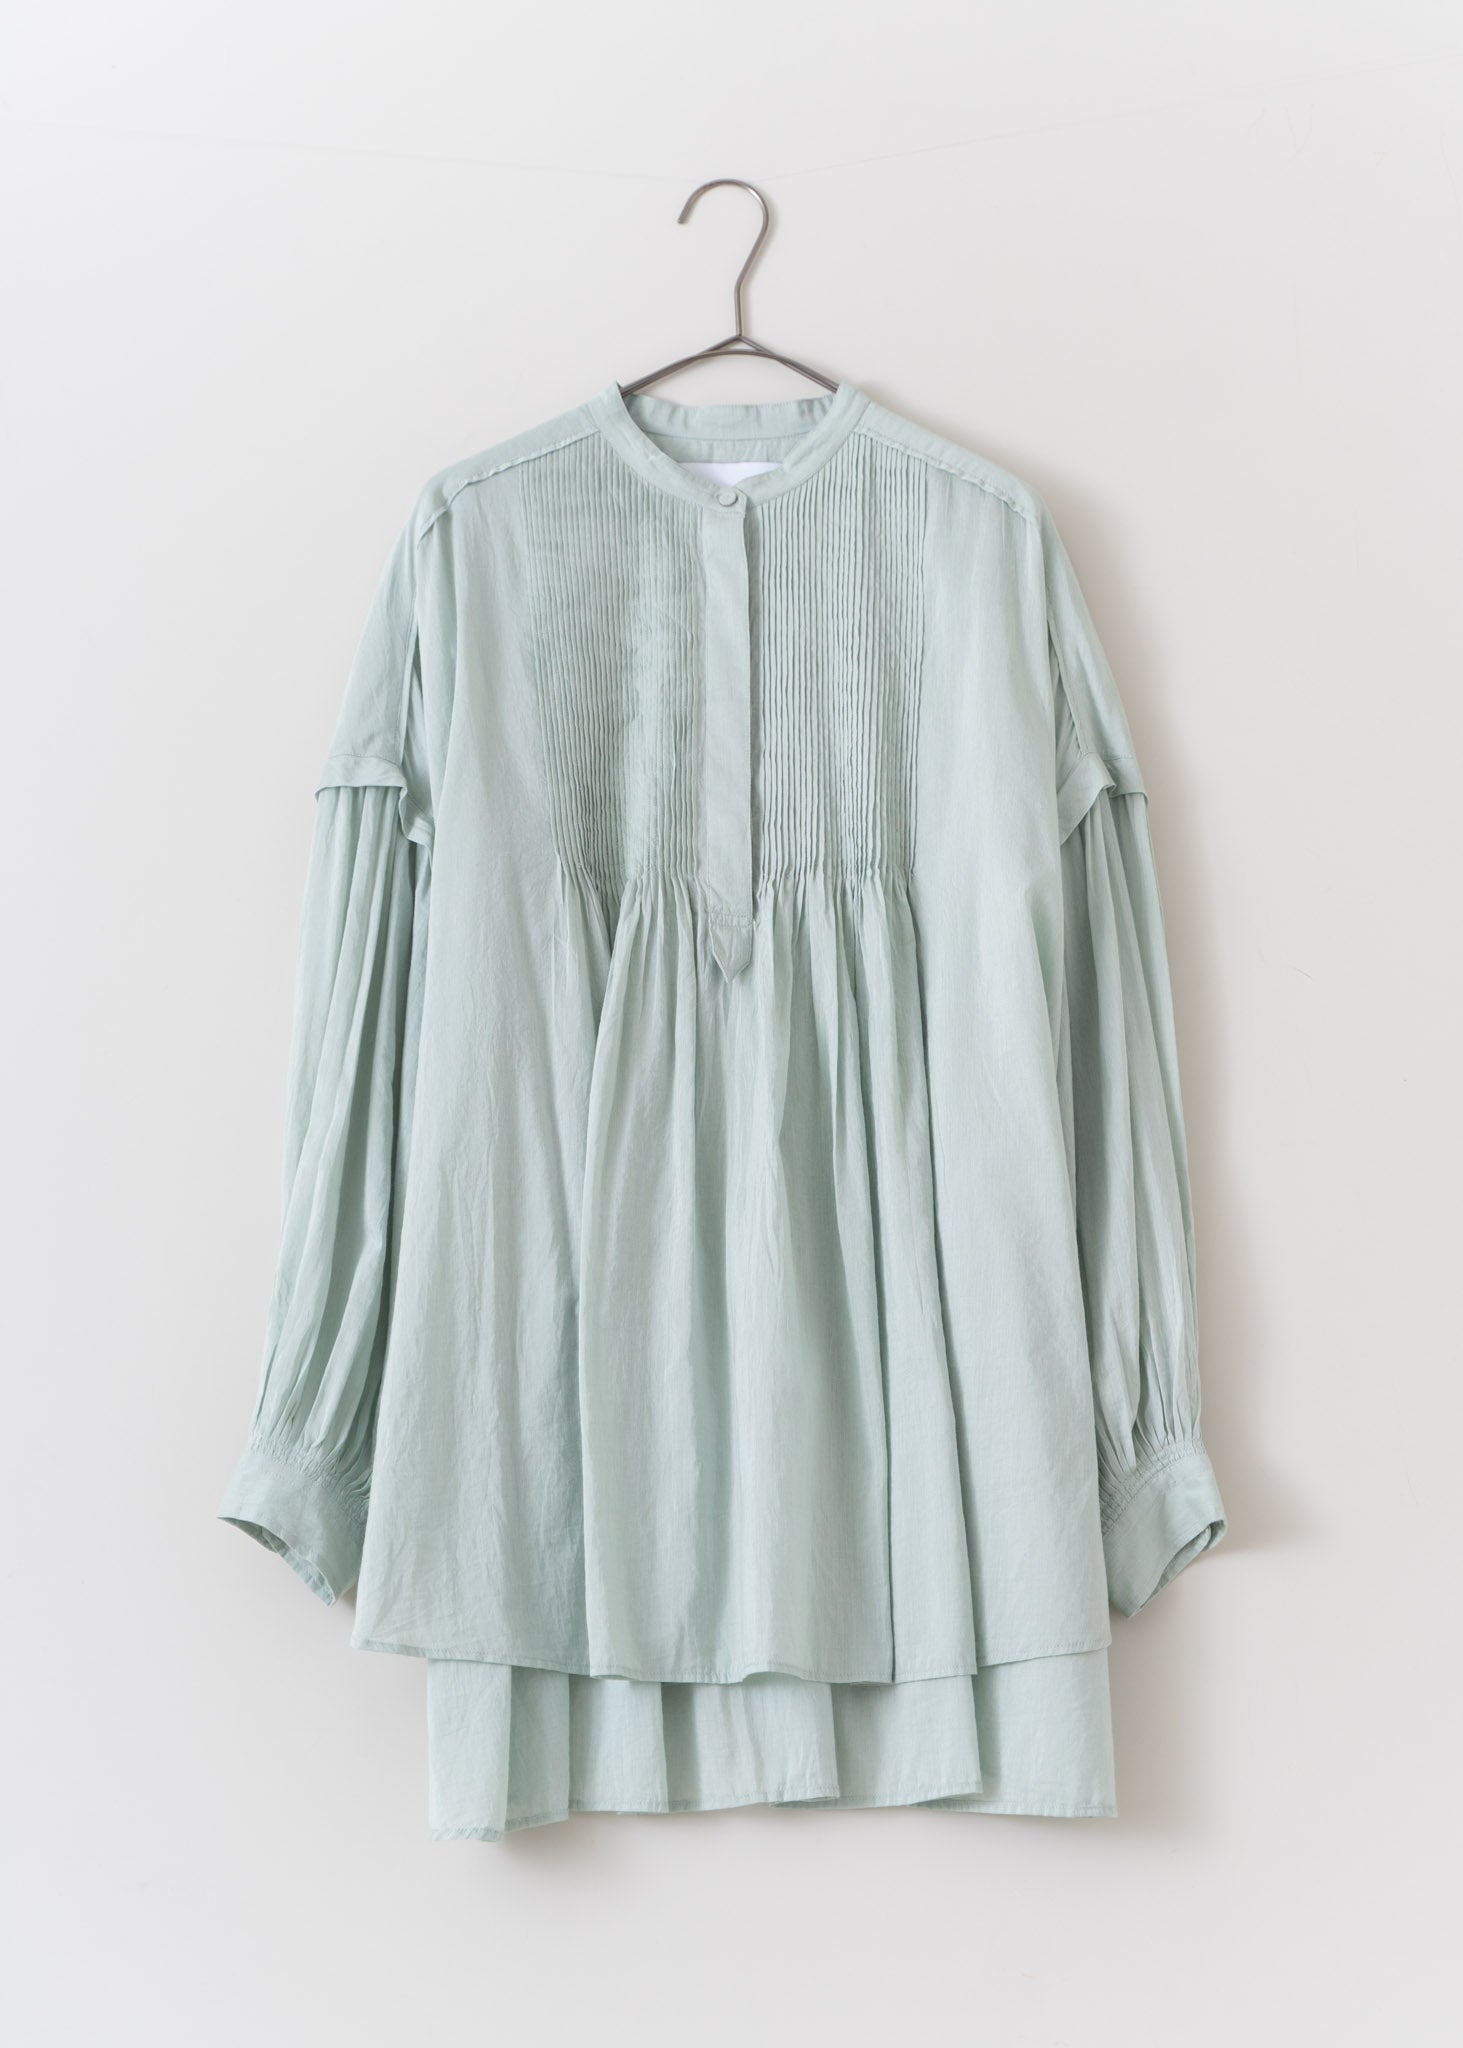 17000円 スタジャンCotton Silk Pintuck Long Sleeve Shirts